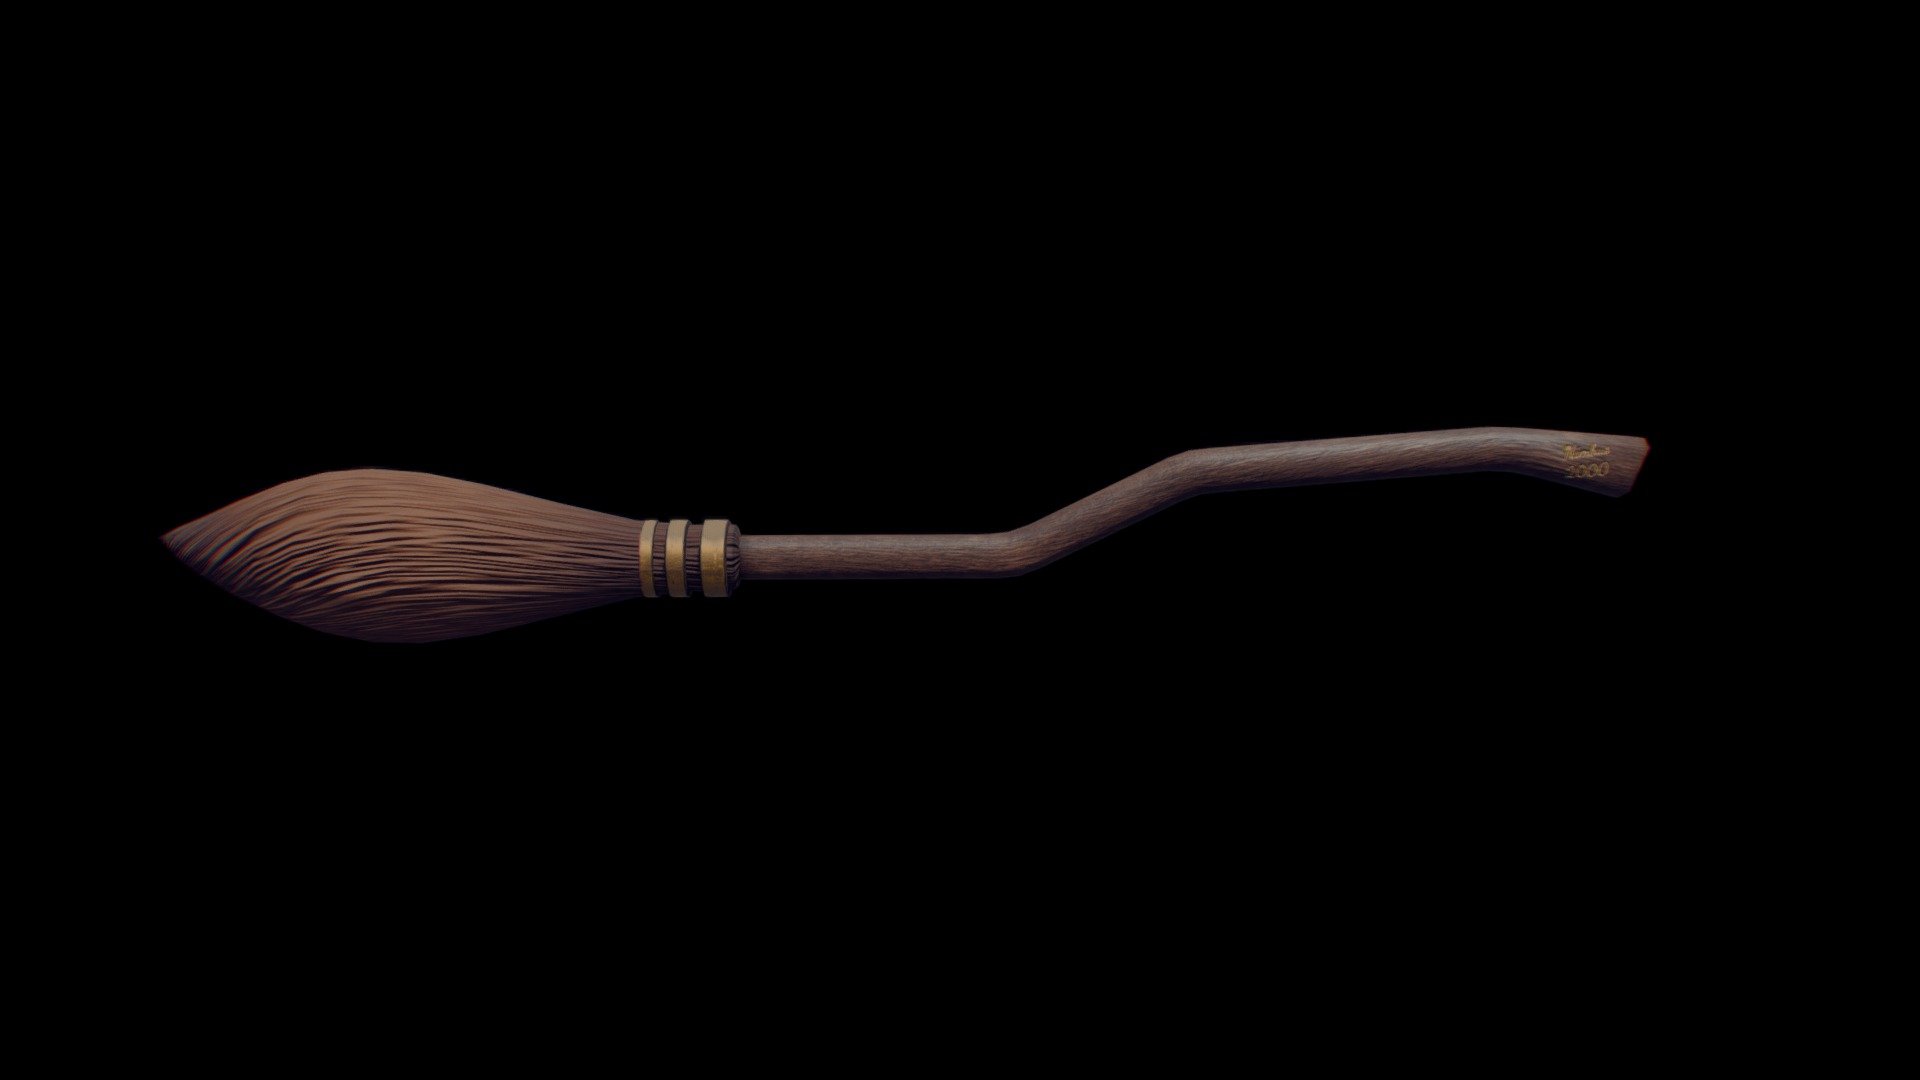 3D file Harry Potter Nimbus 2000 magic broom 3d digital download